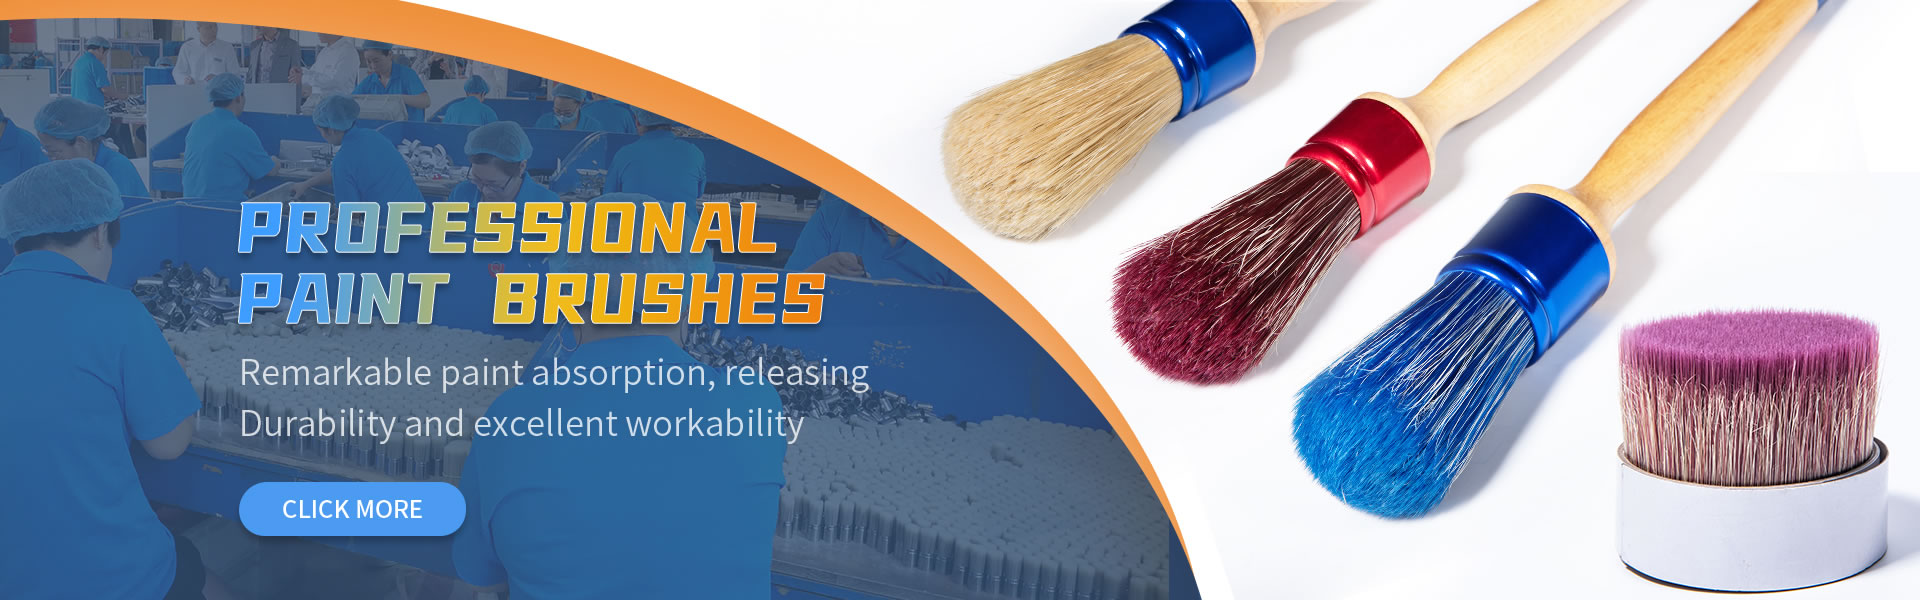 Baoding YingTeSheng Bristle and Brush Making Co., Ltd. Professional Paint Brushes